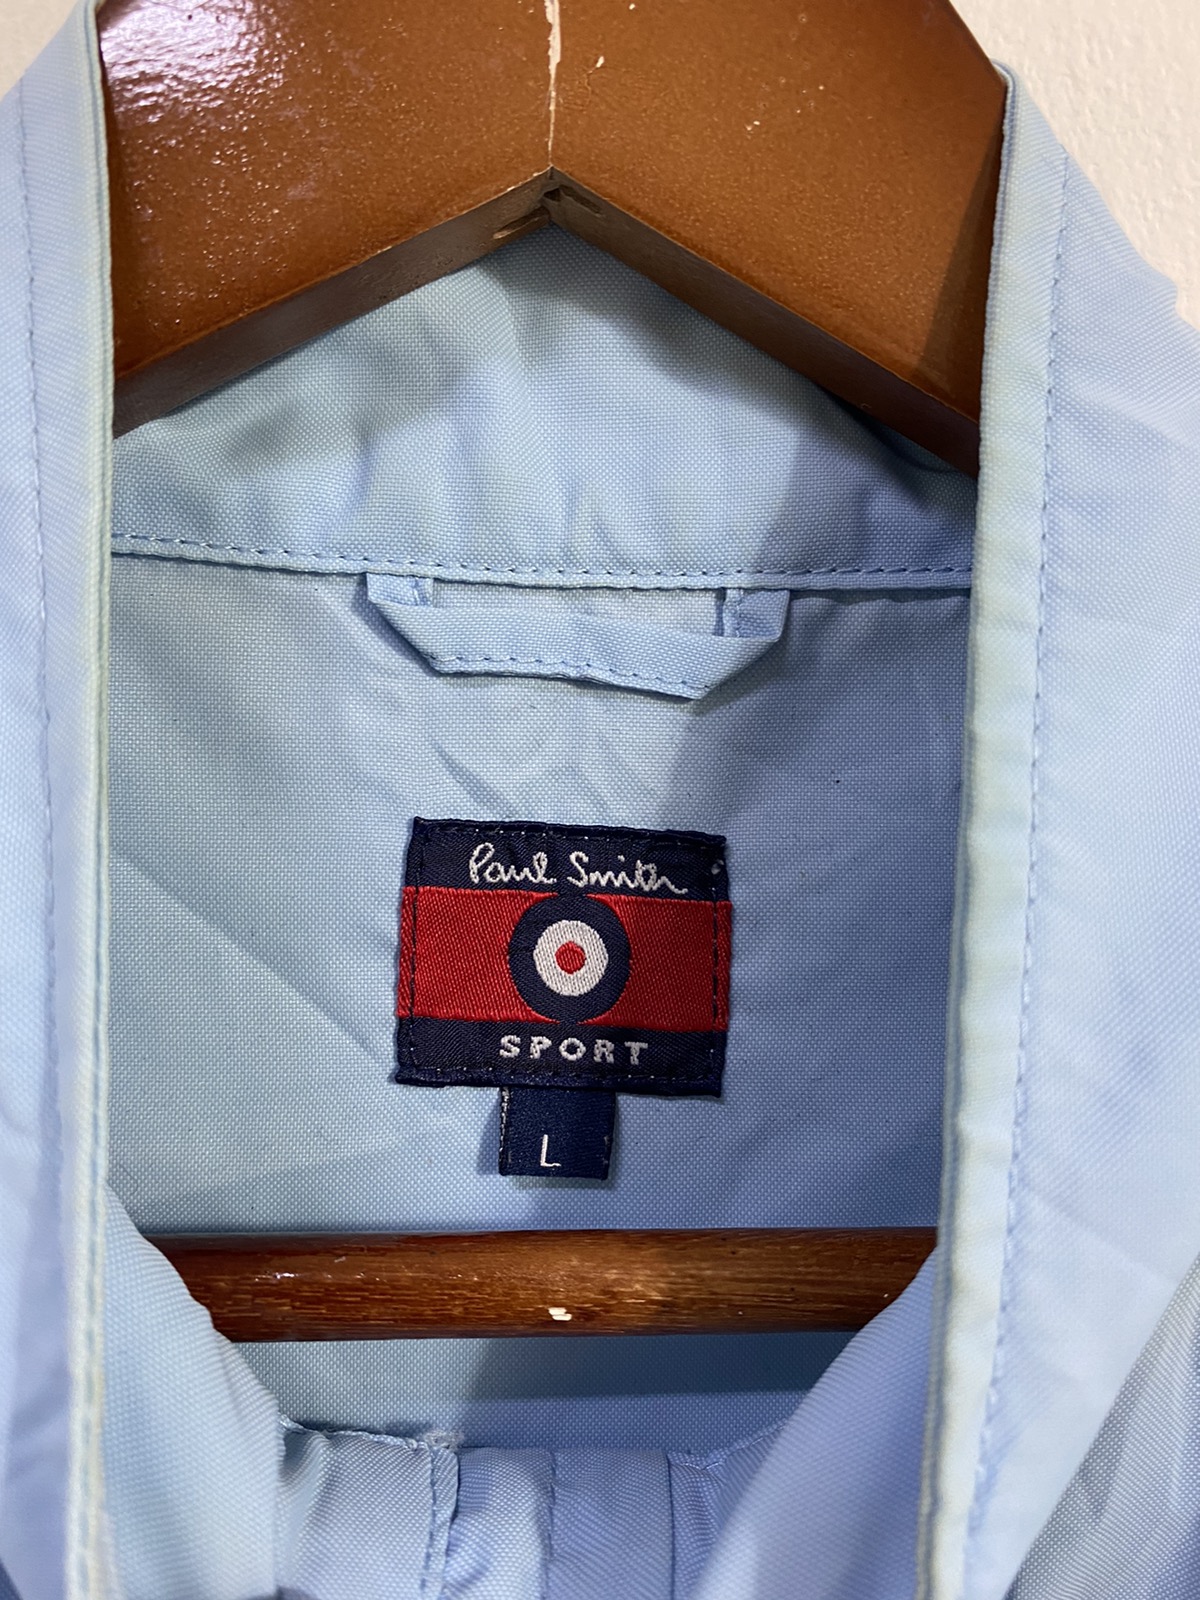 Paul Smith Paul Smith Mod Windbreaker Jacket Light Color Design | letto ...